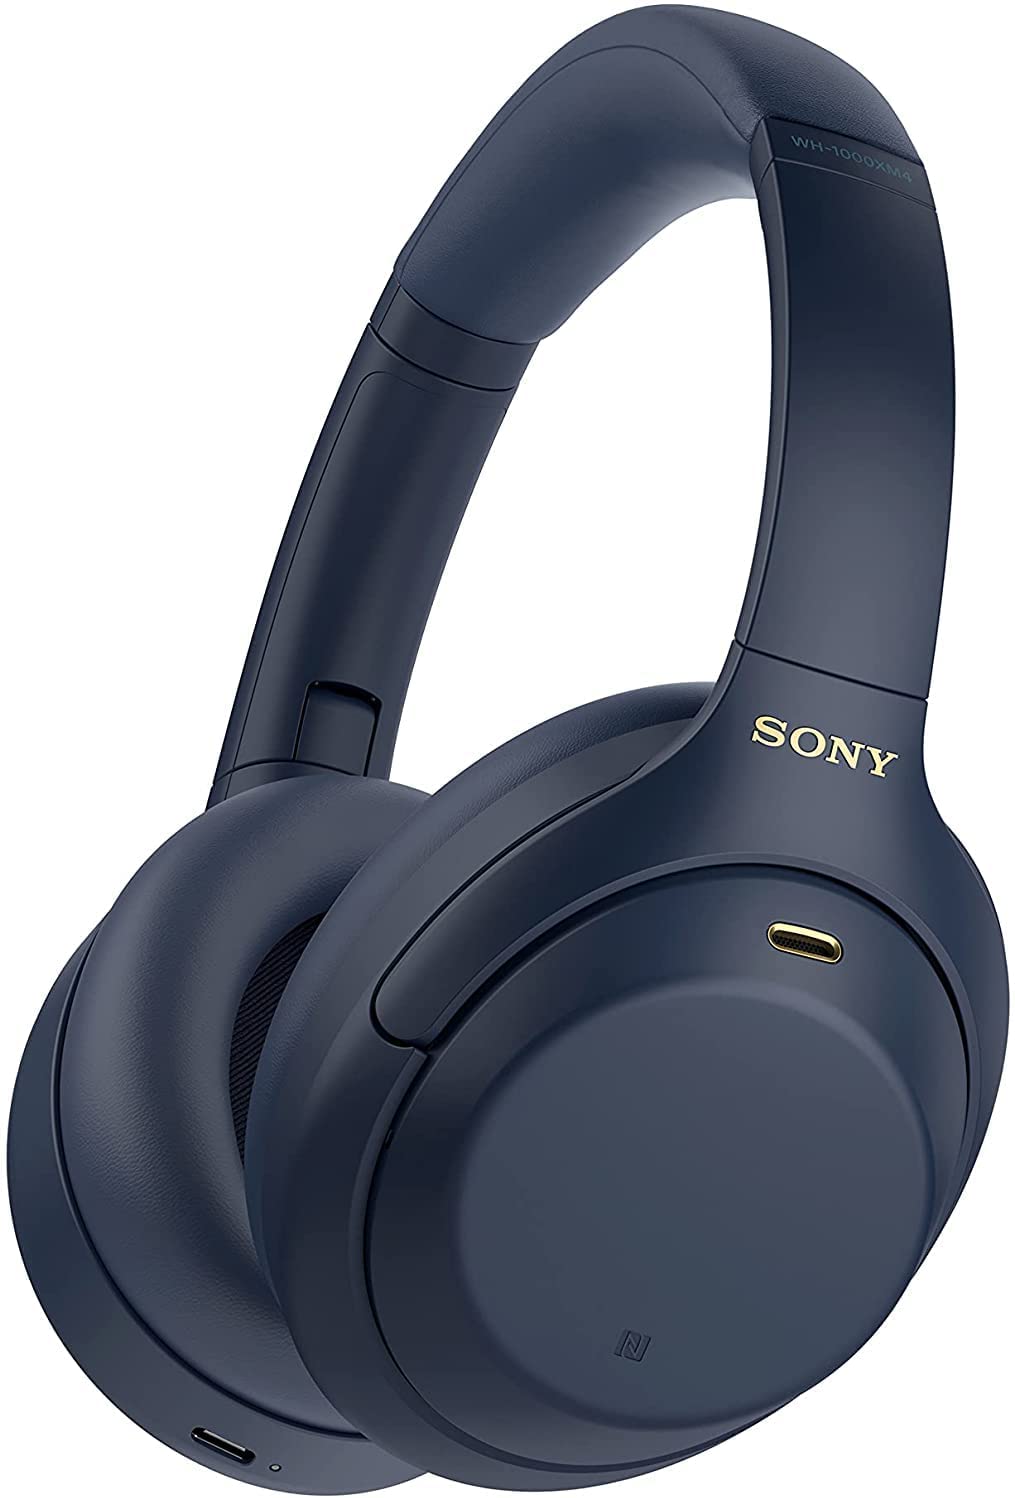 Sony Wireless Over-Ear-Kopfhörer WH-1000XM4 Blau bei Amazon DE